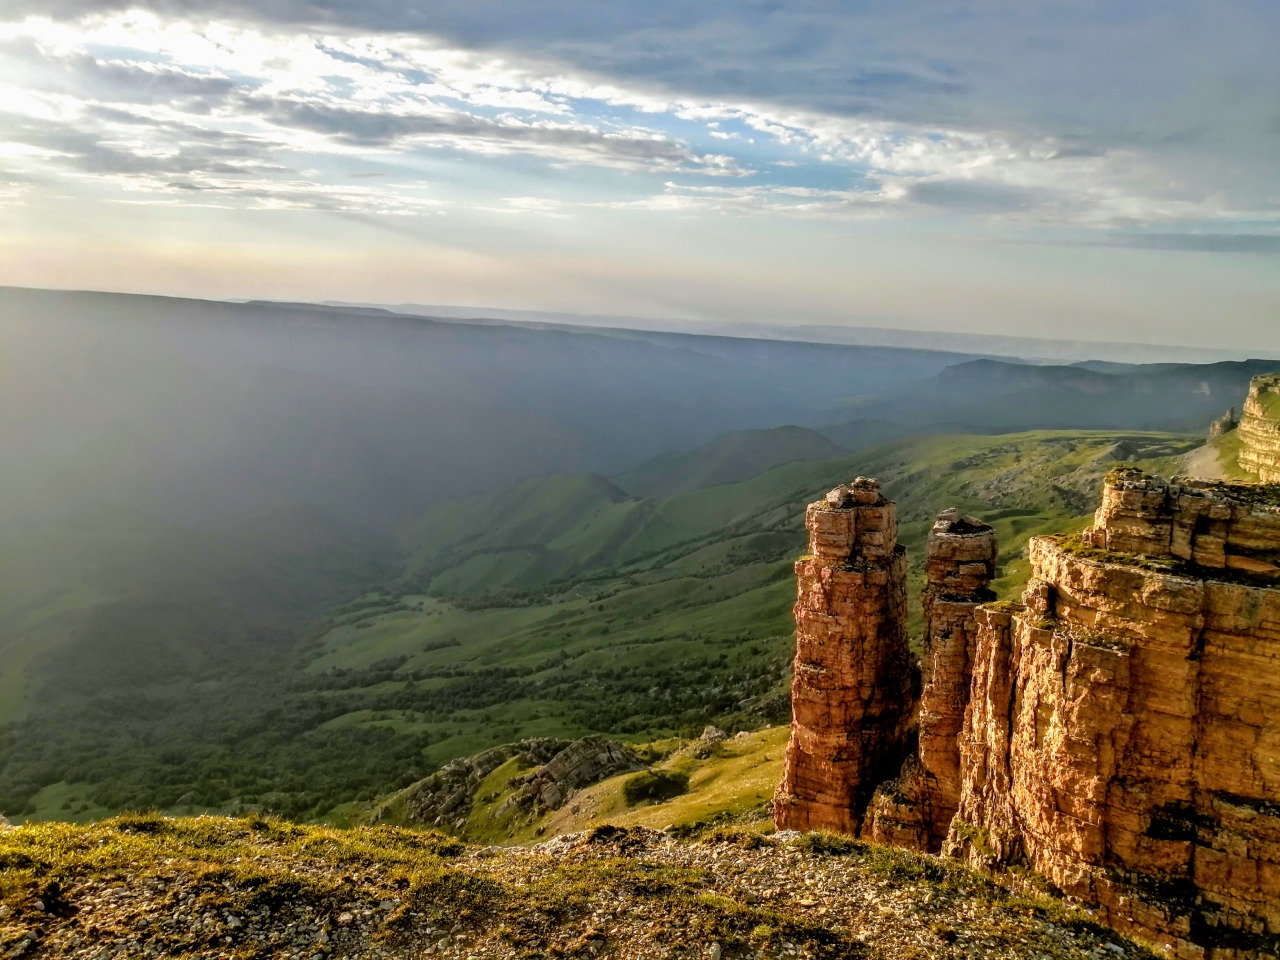 Медовые водопады + закат на плато Бермамыт | Цена 23500₽, отзывы, описание экскурсии